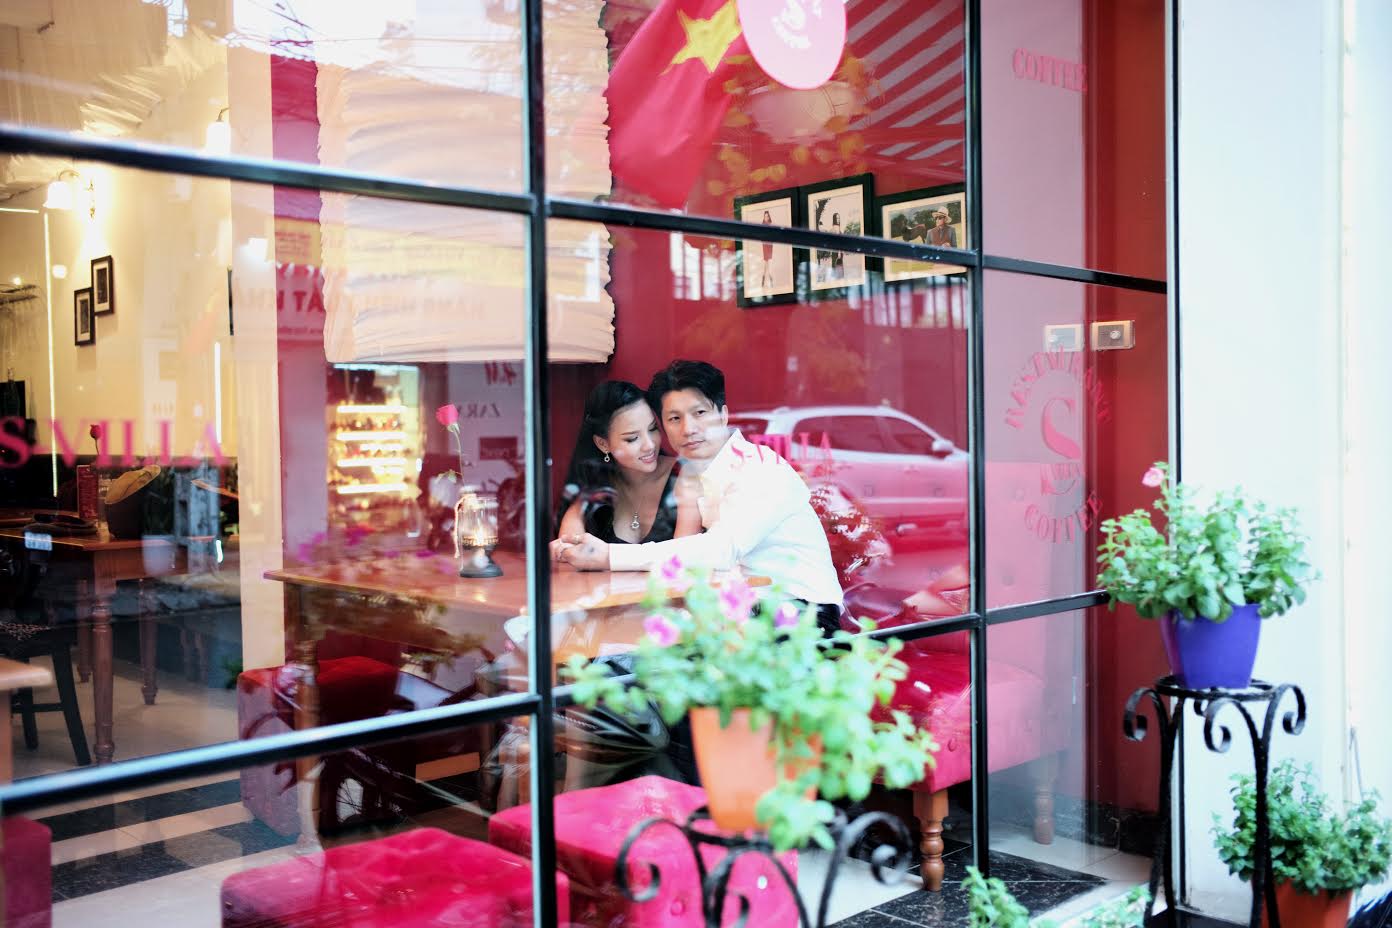 Dustin Nguyễn tình tứ với vợ siêu mẫu trong quán cafe - 1